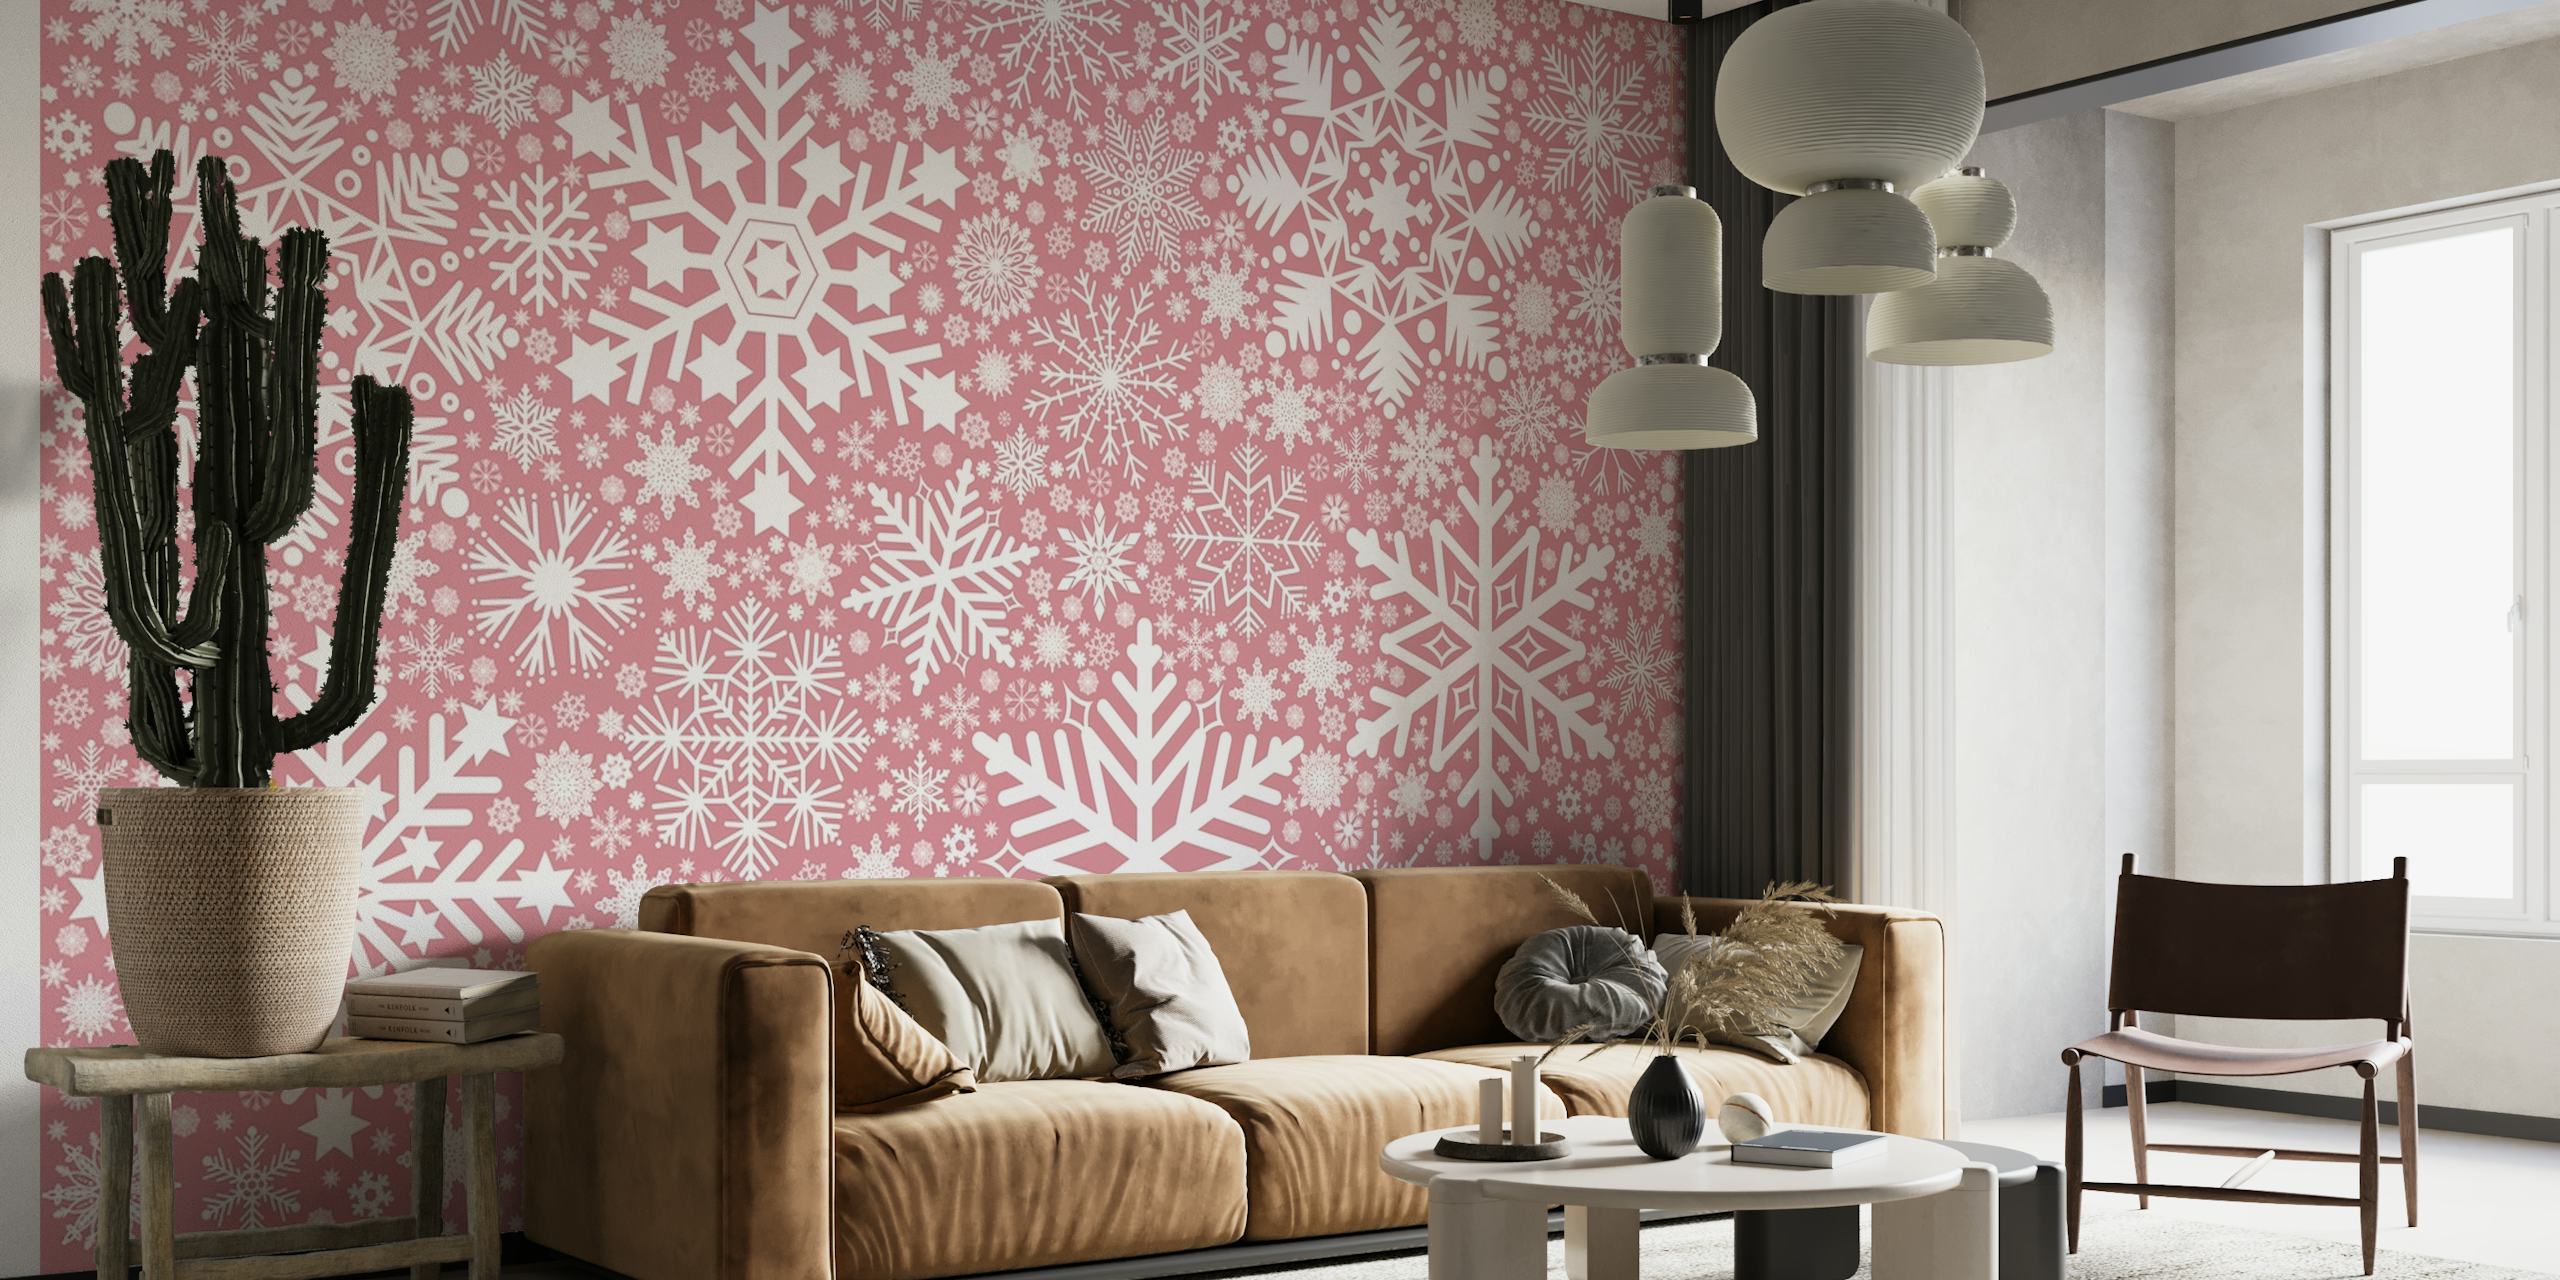 Elegante roze sneeuwvlokpatroon muurschildering voor een gezellig interieur